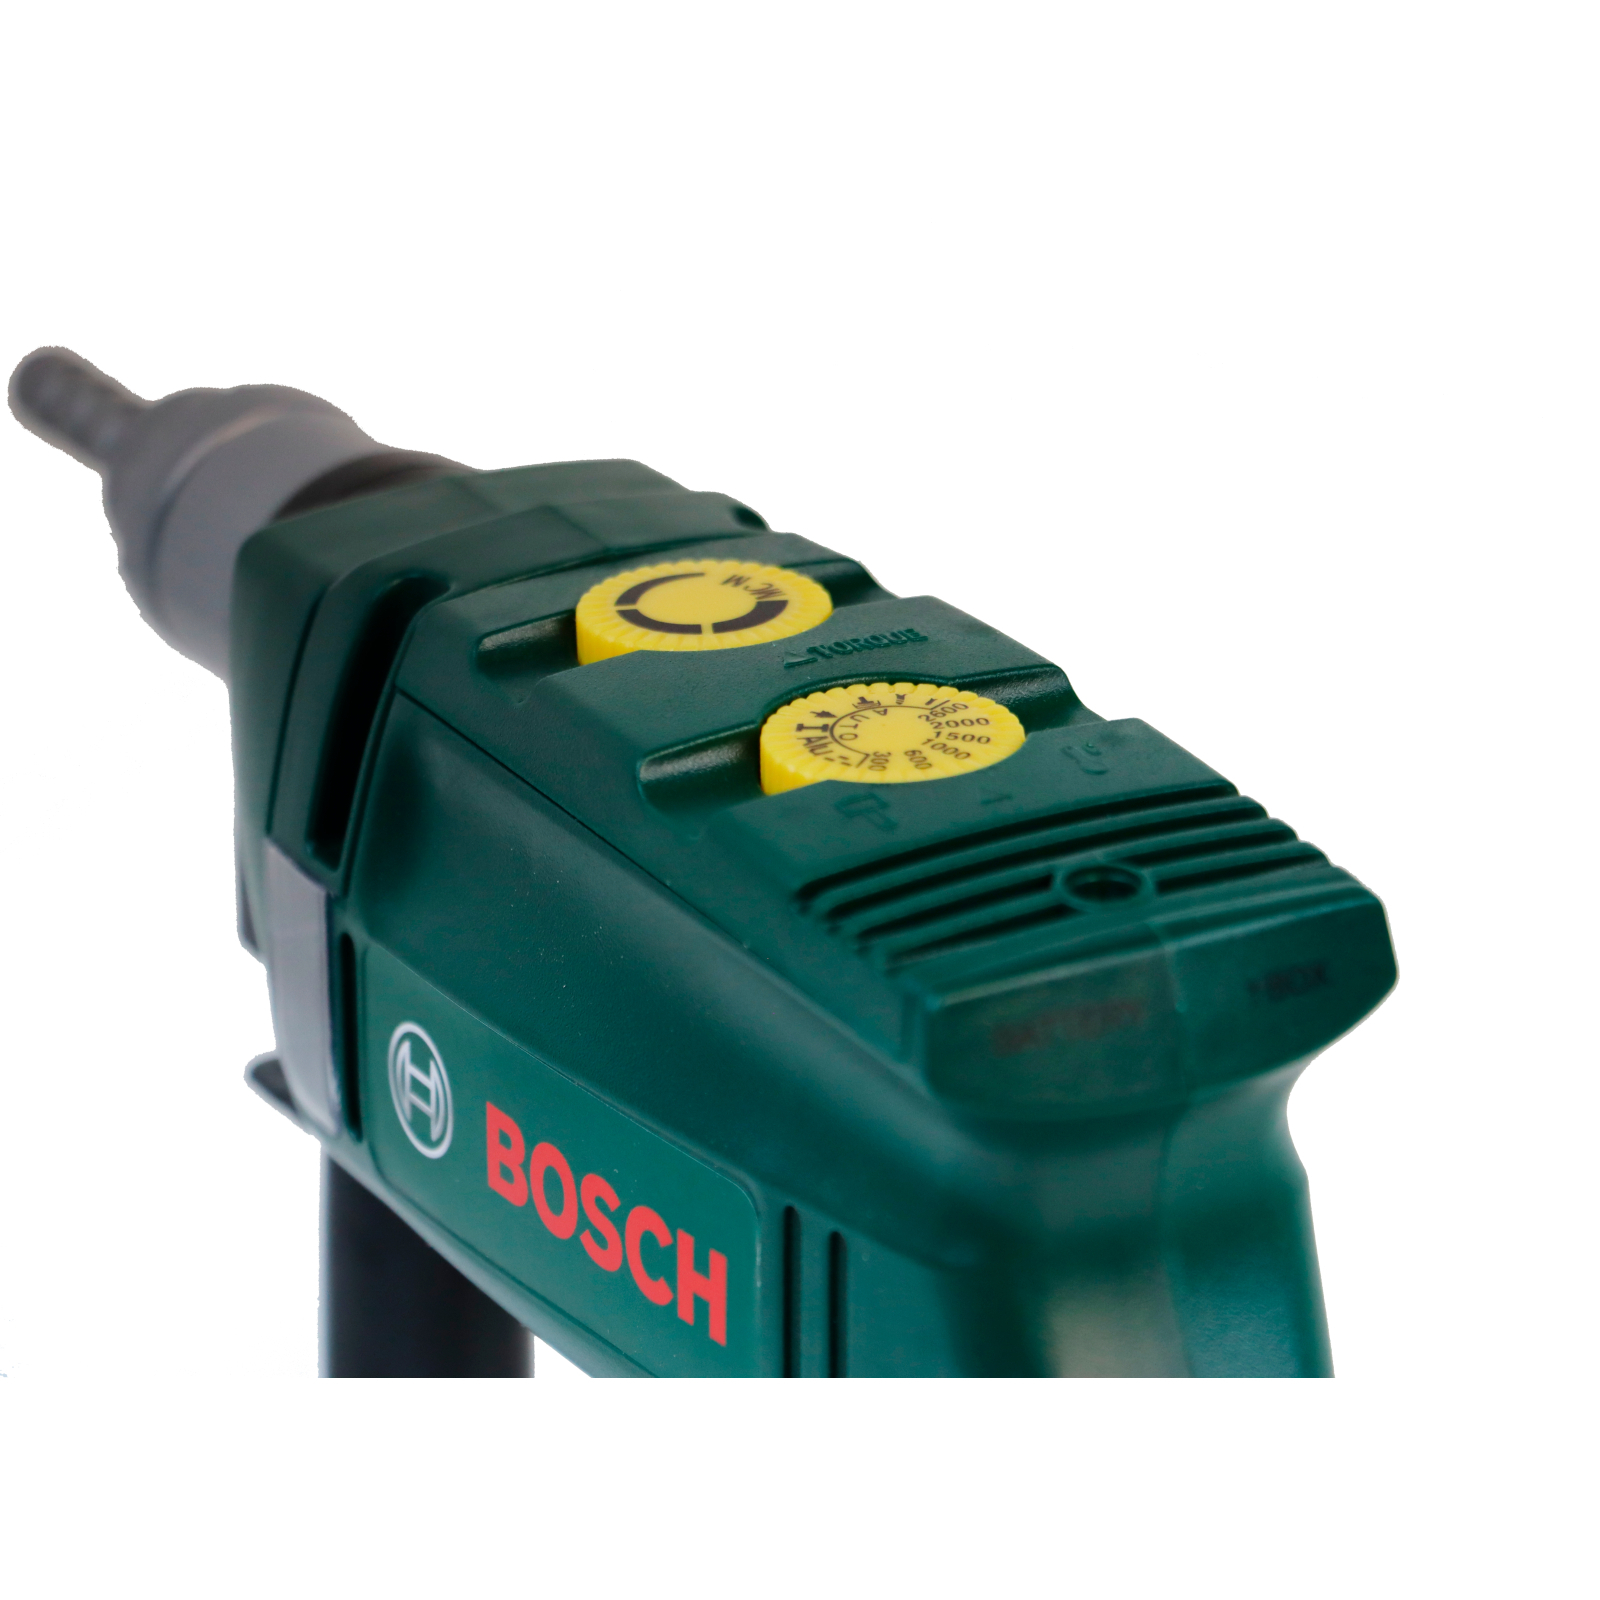 Игровой набор Bosch Дрель маленькая (8410) изображение 2